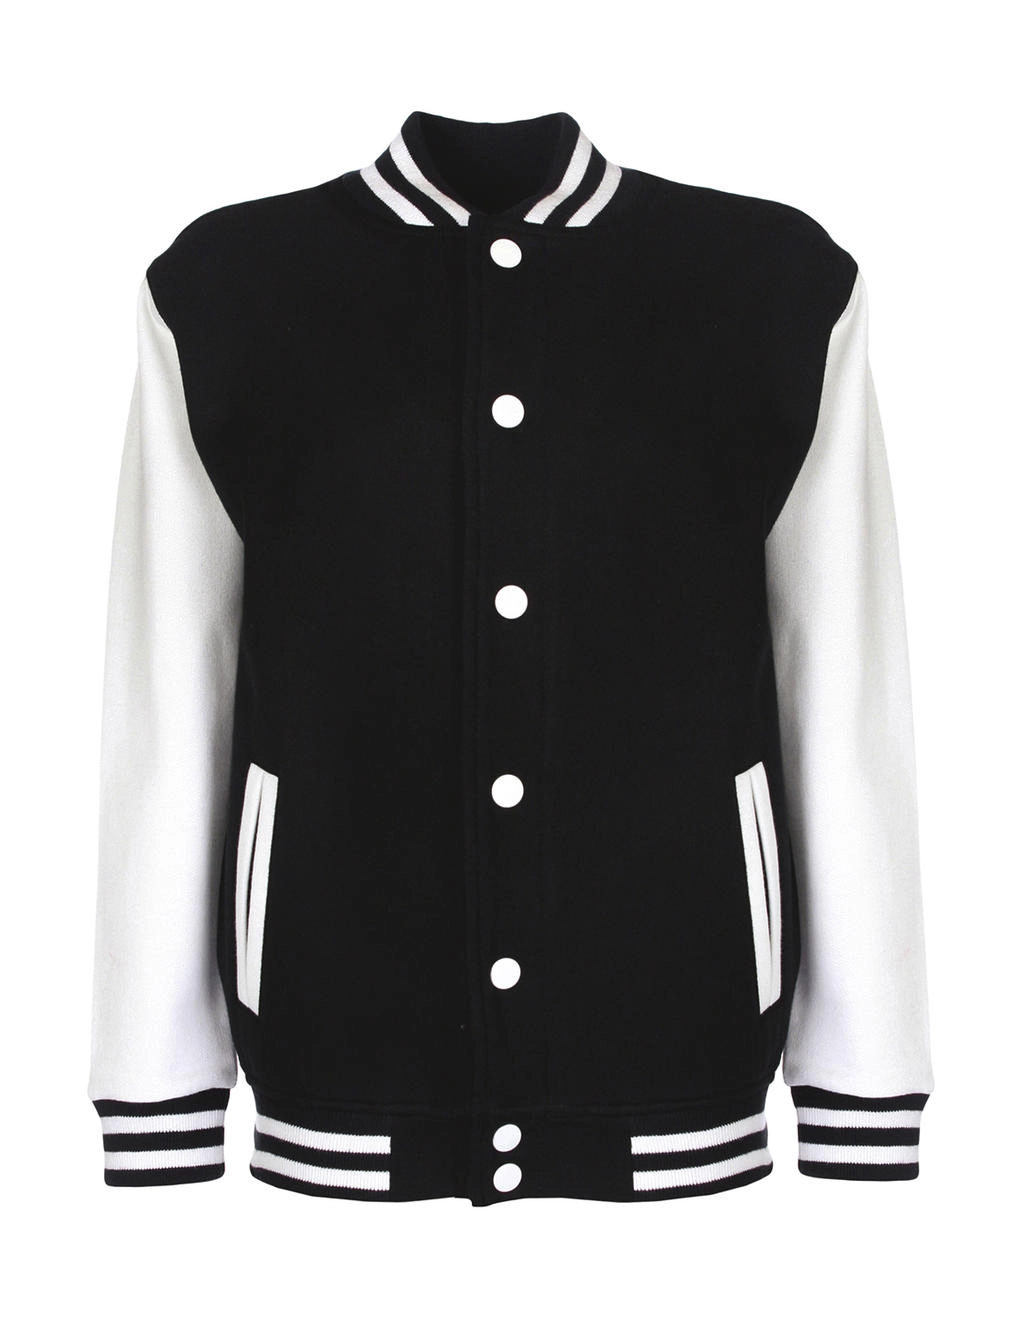 Junior Varsity Jacket zum Besticken und Bedrucken in der Farbe Black/White mit Ihren Logo, Schriftzug oder Motiv.